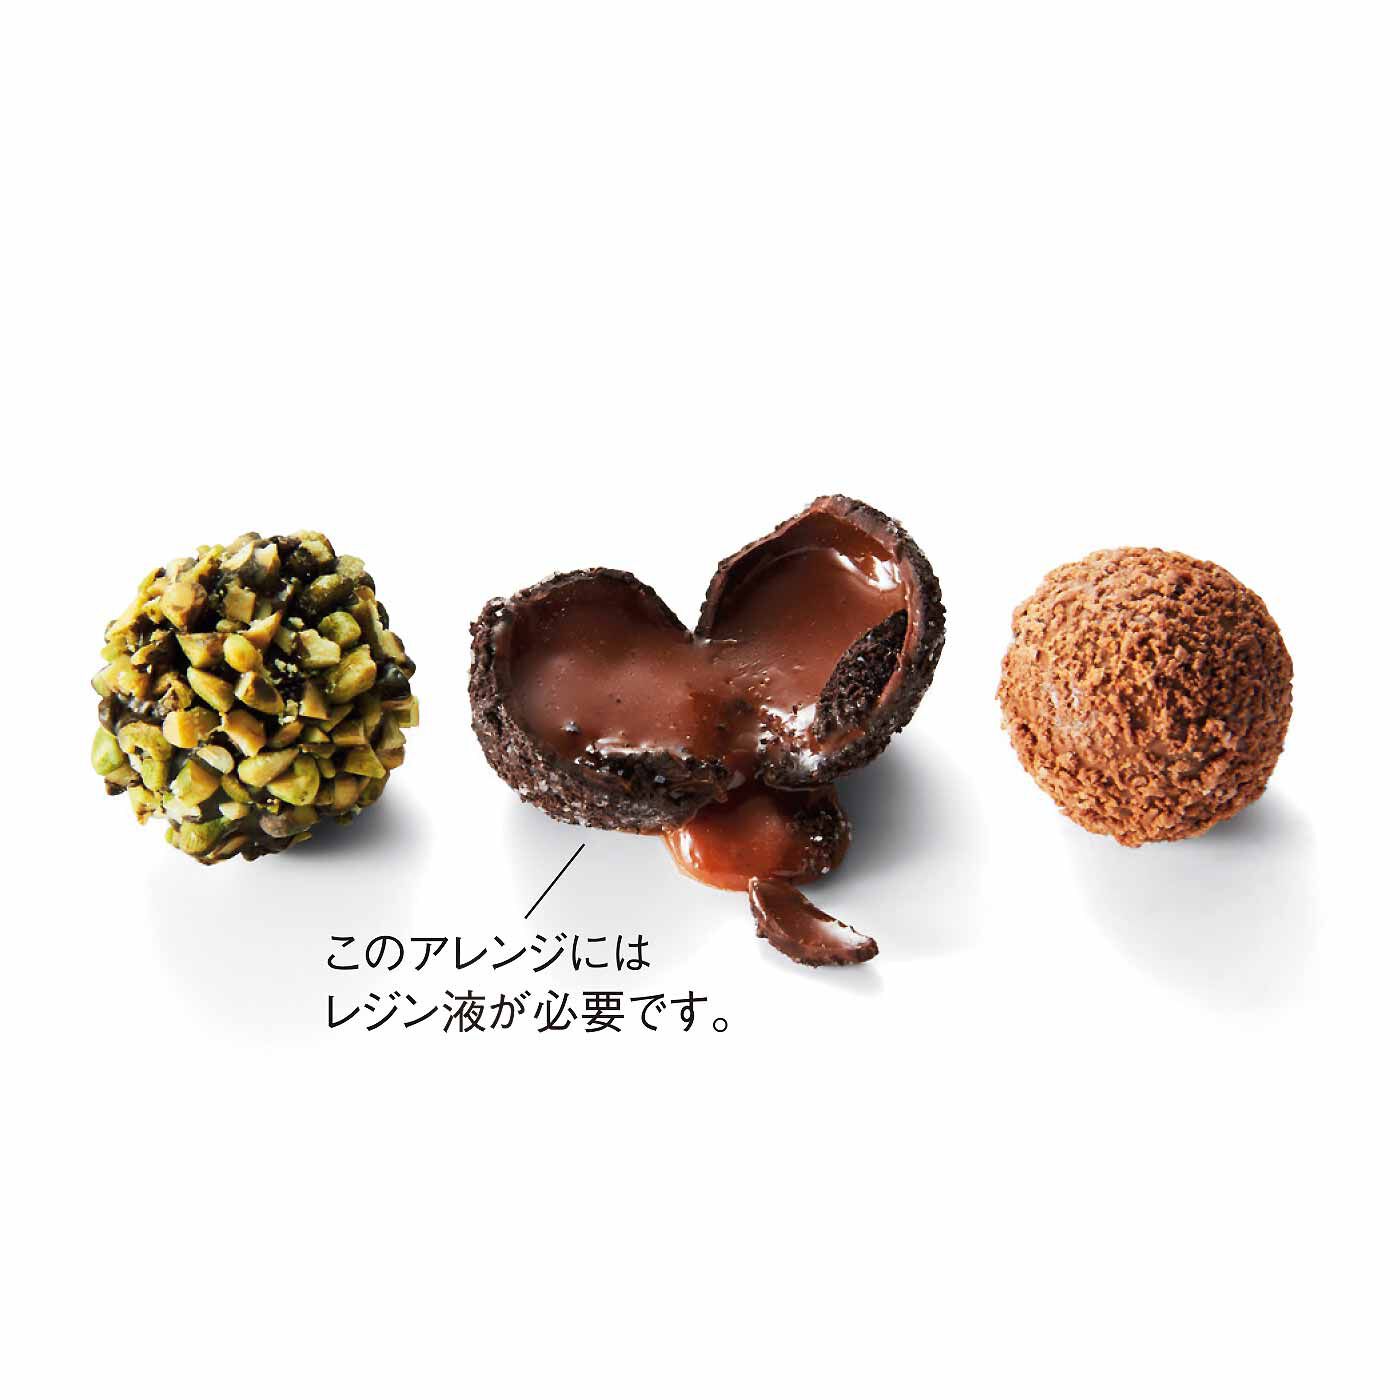 クチュリエ|「幸福（しあわせ）のチョコレート」とコラボ 樹脂粘土で作る 食べられないチョコレートの会|トリュフタイプ